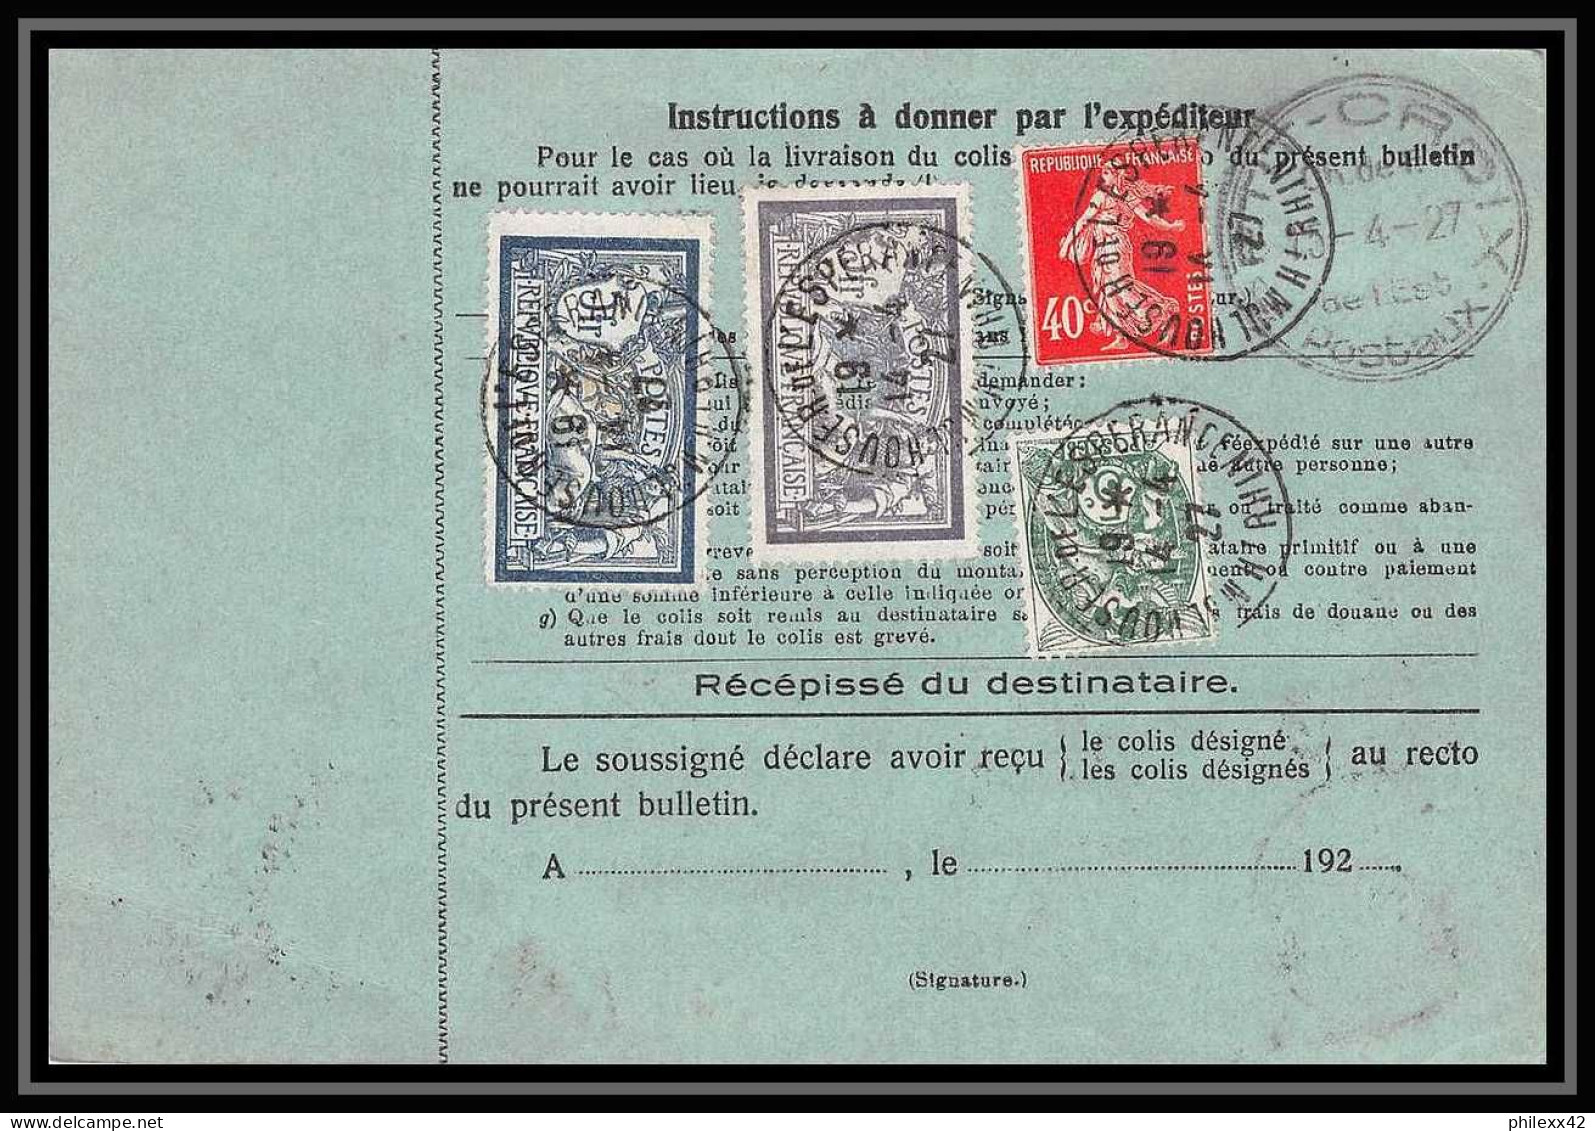 25023 Bulletin D'expédition France Colis Postaux Fiscal Haut Rhin - 1927 Mulhouse Merson 123+145 GARE - Lettres & Documents